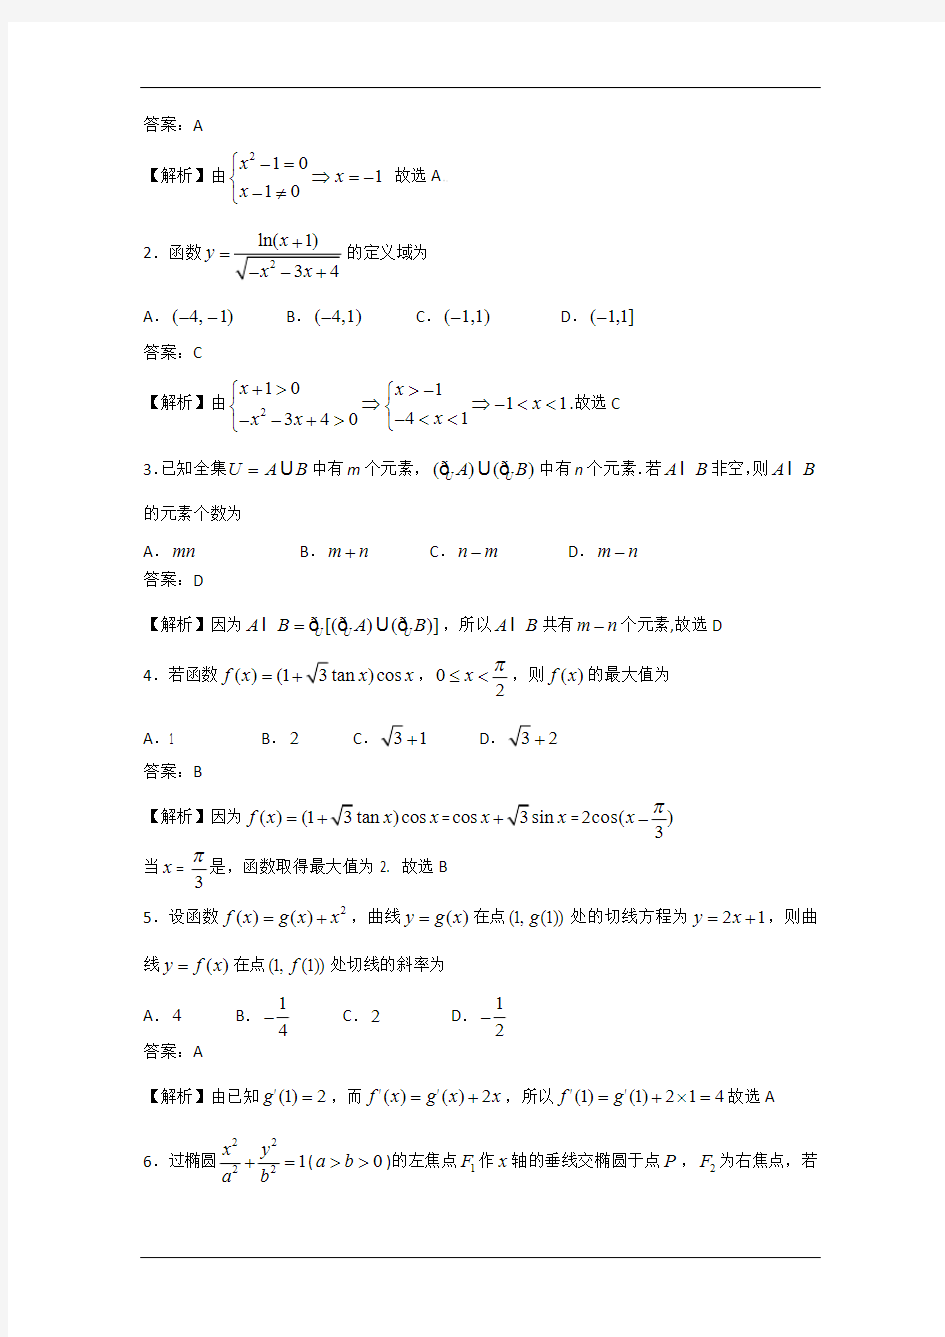 2009年江西高考理科数学卷(含详细答案解析)